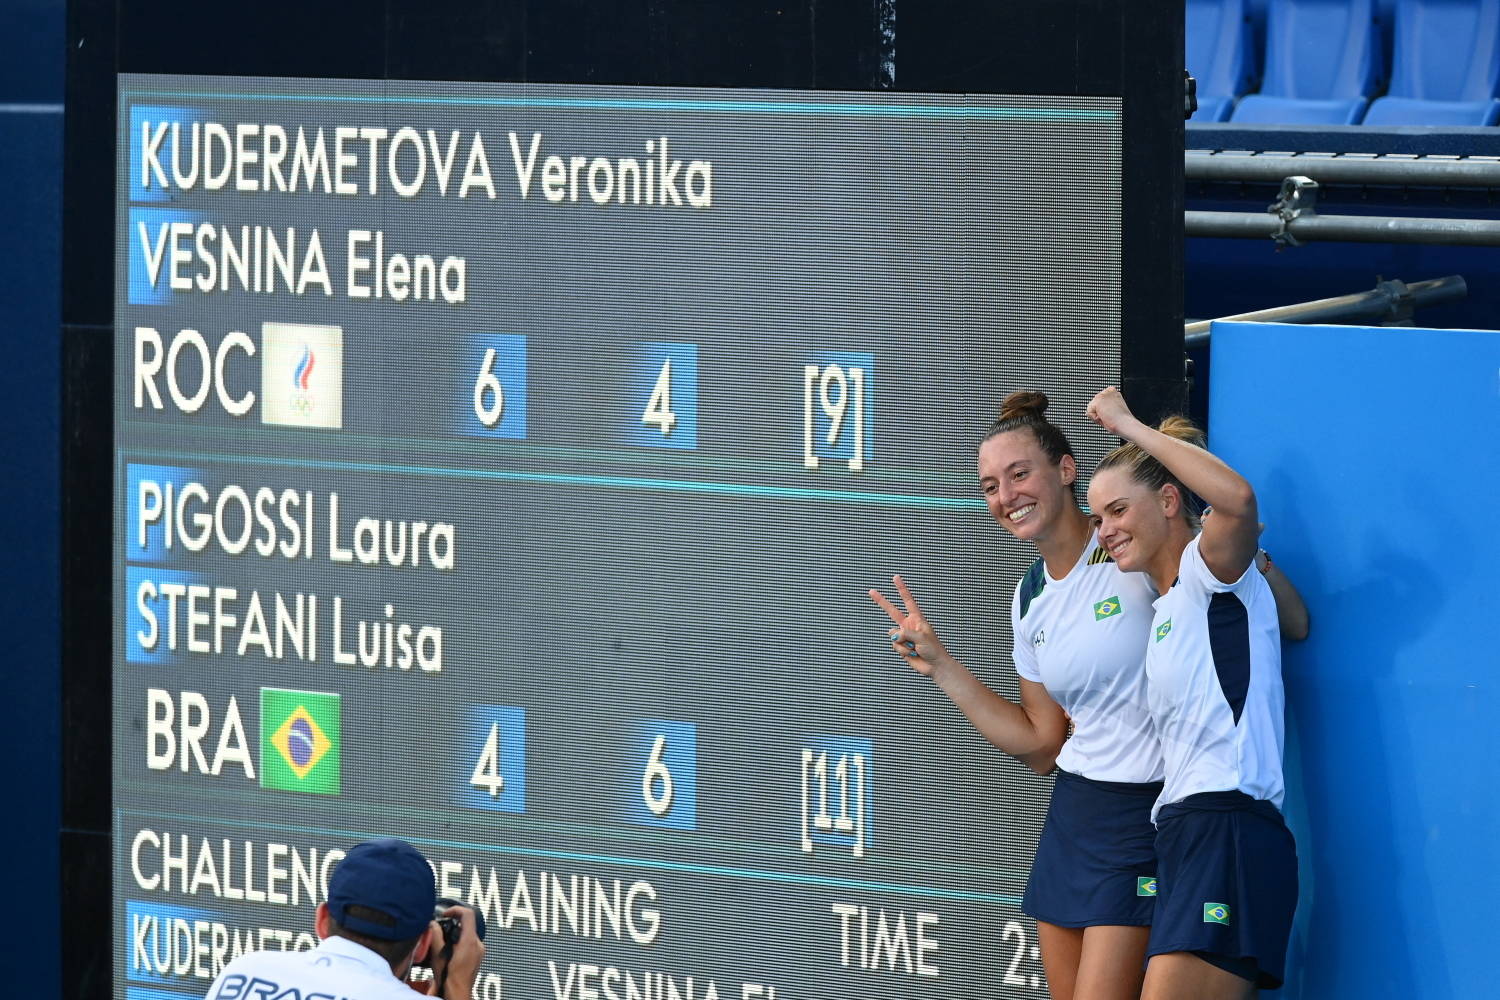 Dupla brasileira do tênis feminino cai na semi e vai disputar o bronze nas  Olimpíadas 